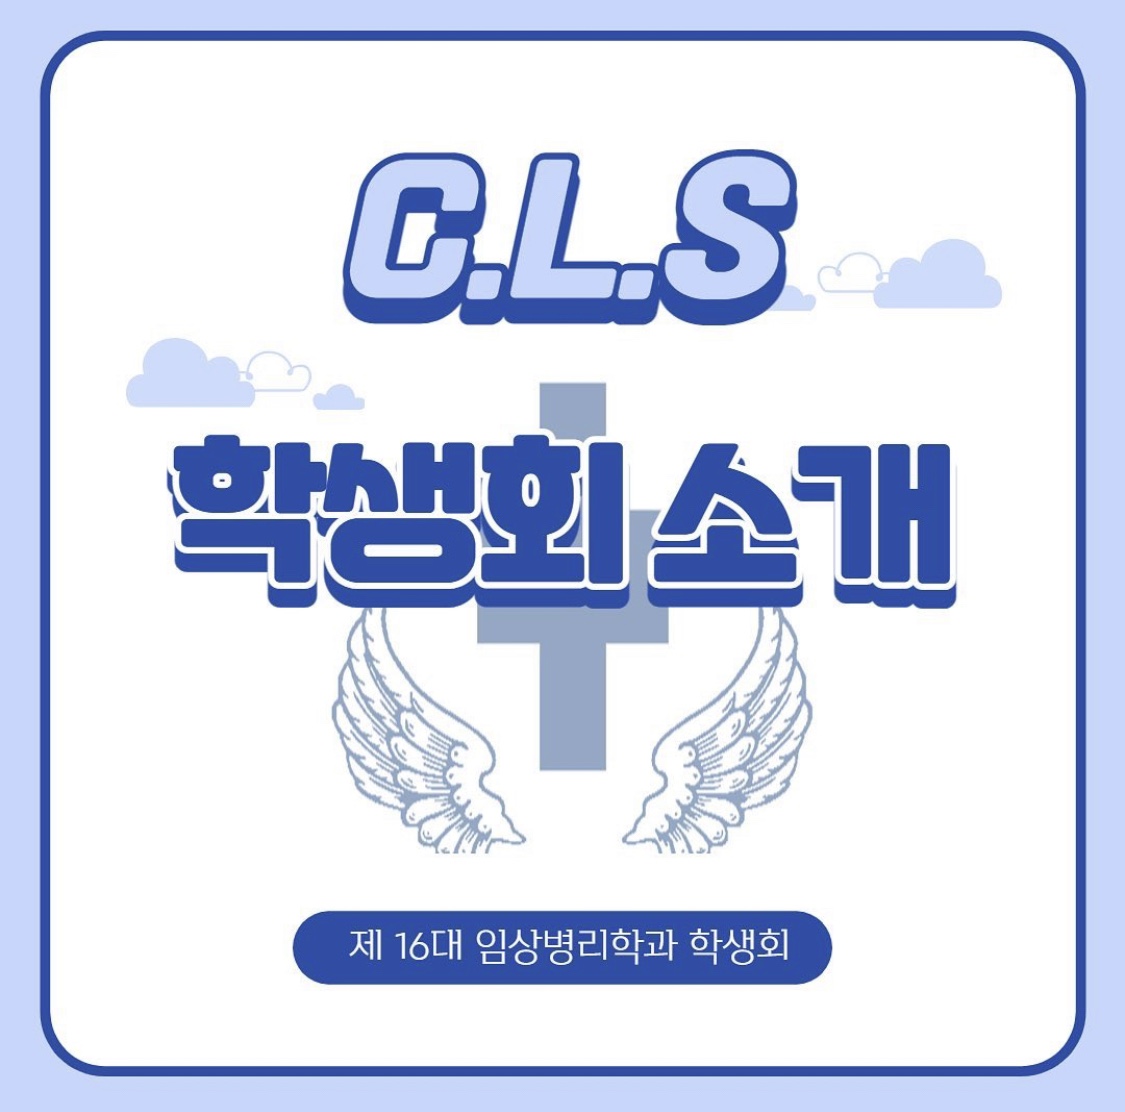 CLS 학생회 소개